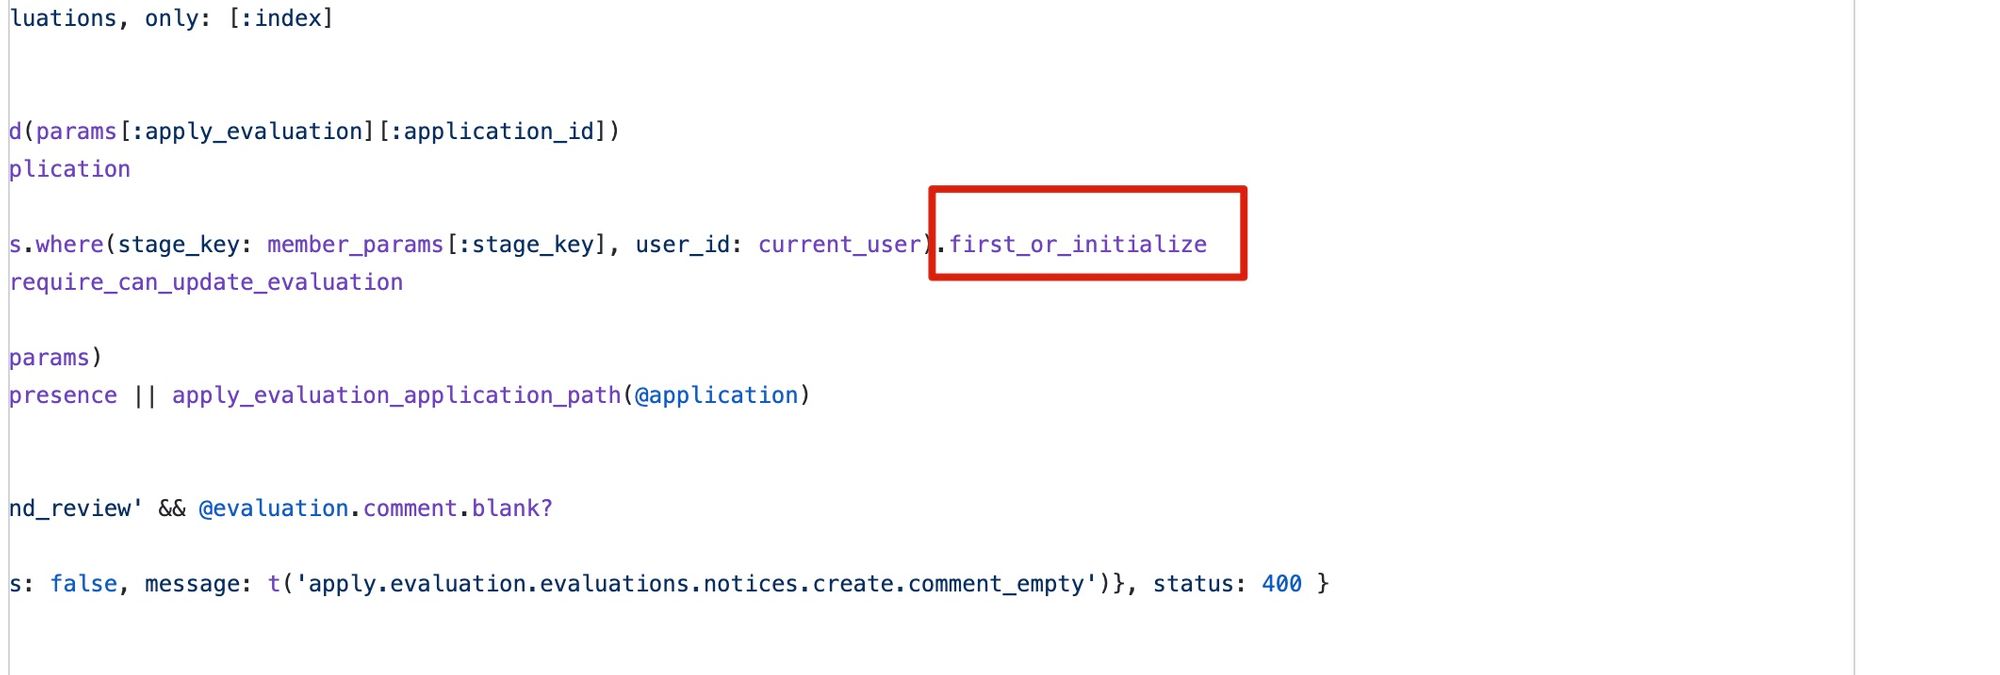 [教程] Ruby on Rails 的 first_or_initialize 会造成 race condition，解决办法是用 upsert